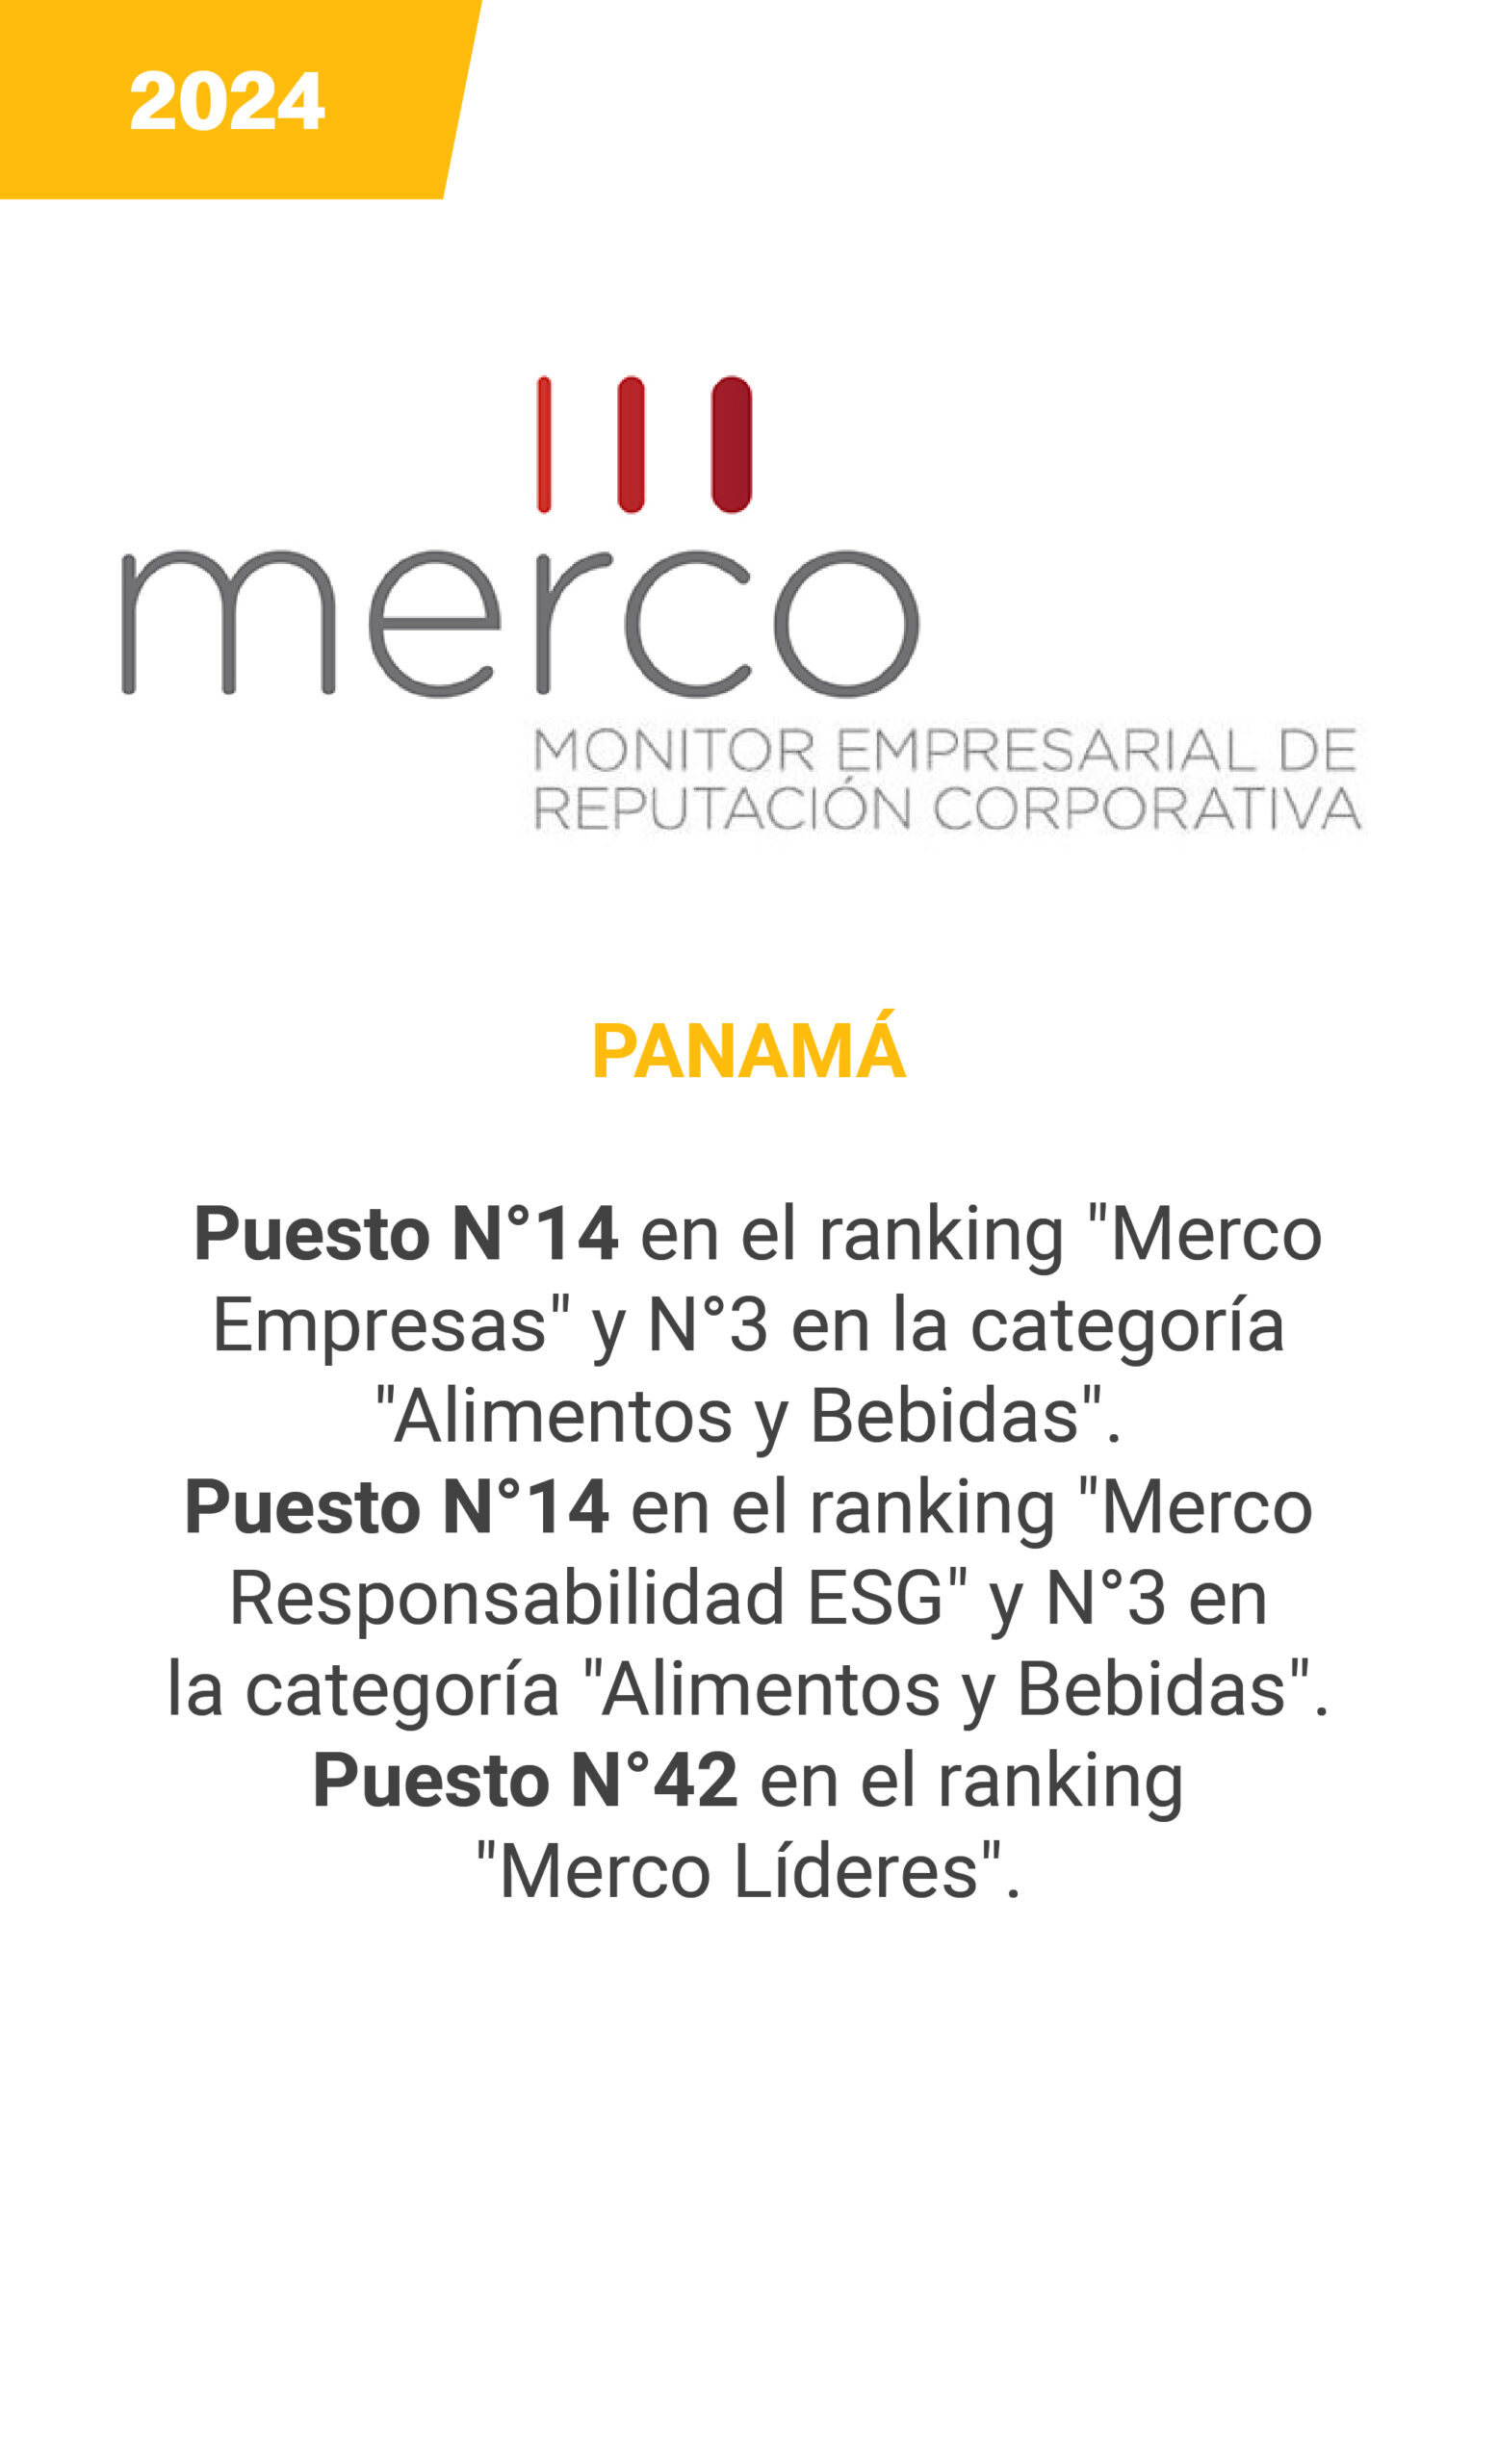 MERCO - Panama 2024 - mobile